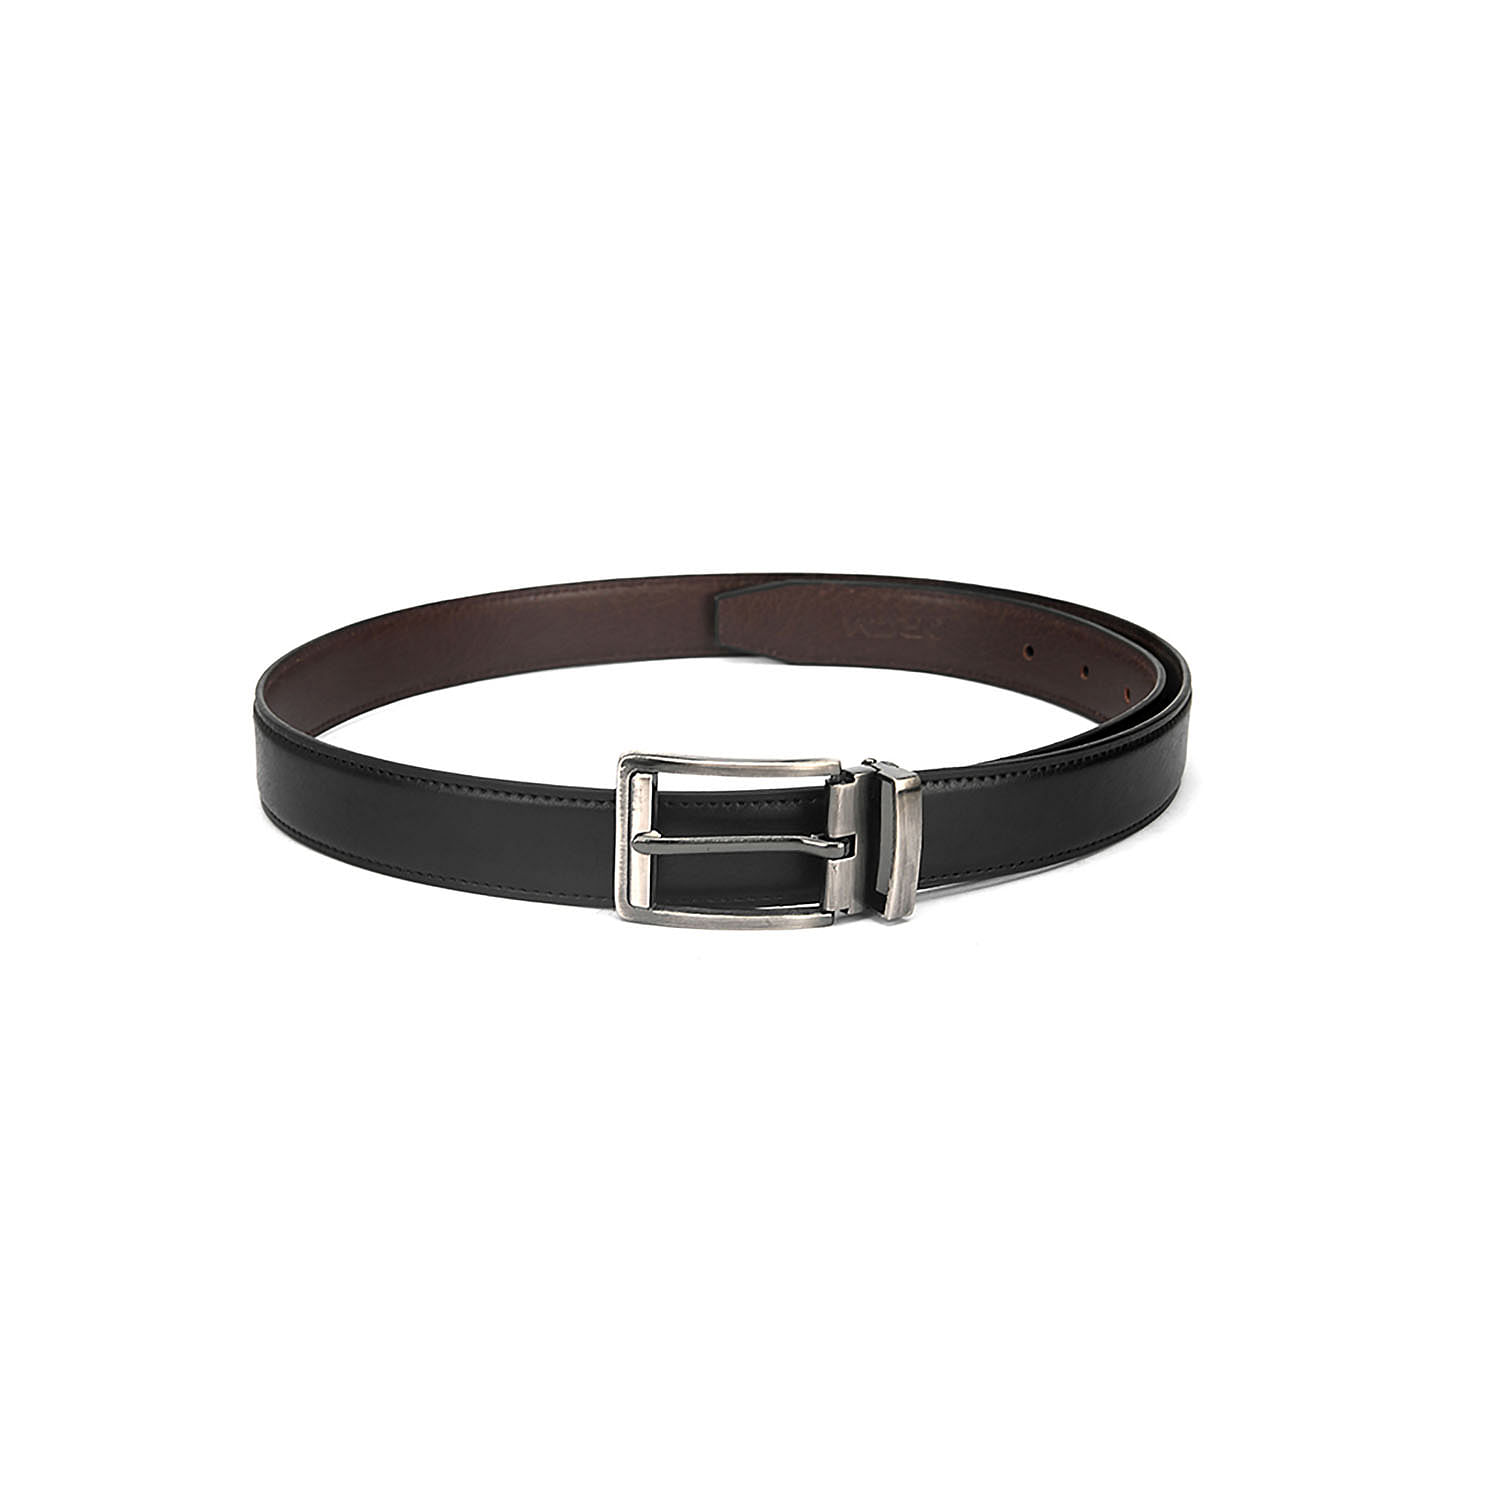 Men's Formal Belt with reversable Strap - FR-DB0004 - Black/Brown